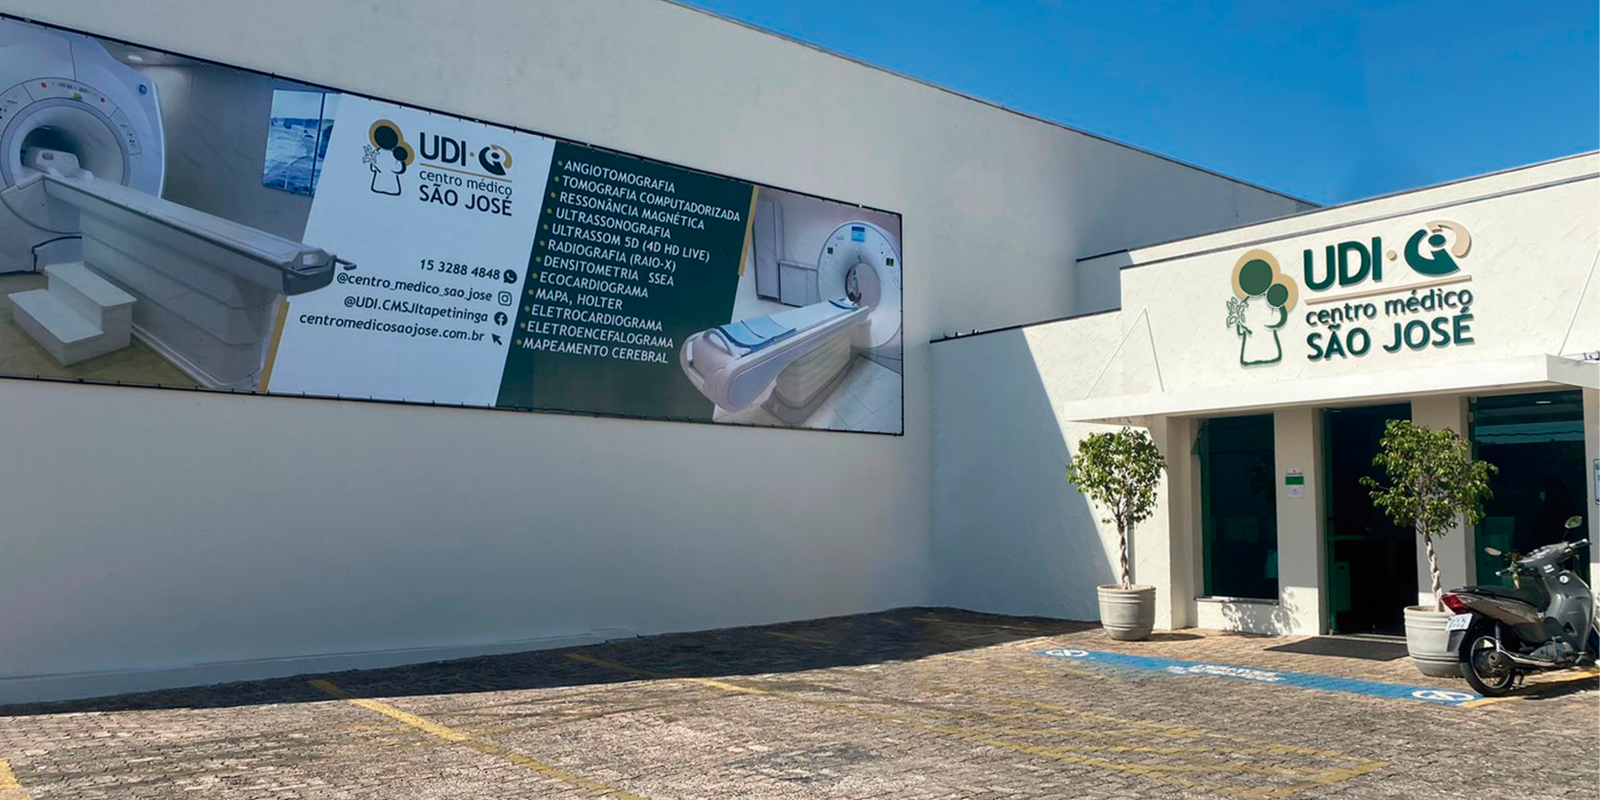 Clínica UDI Itapetininga passa a fazer parte do Centro Médico São José